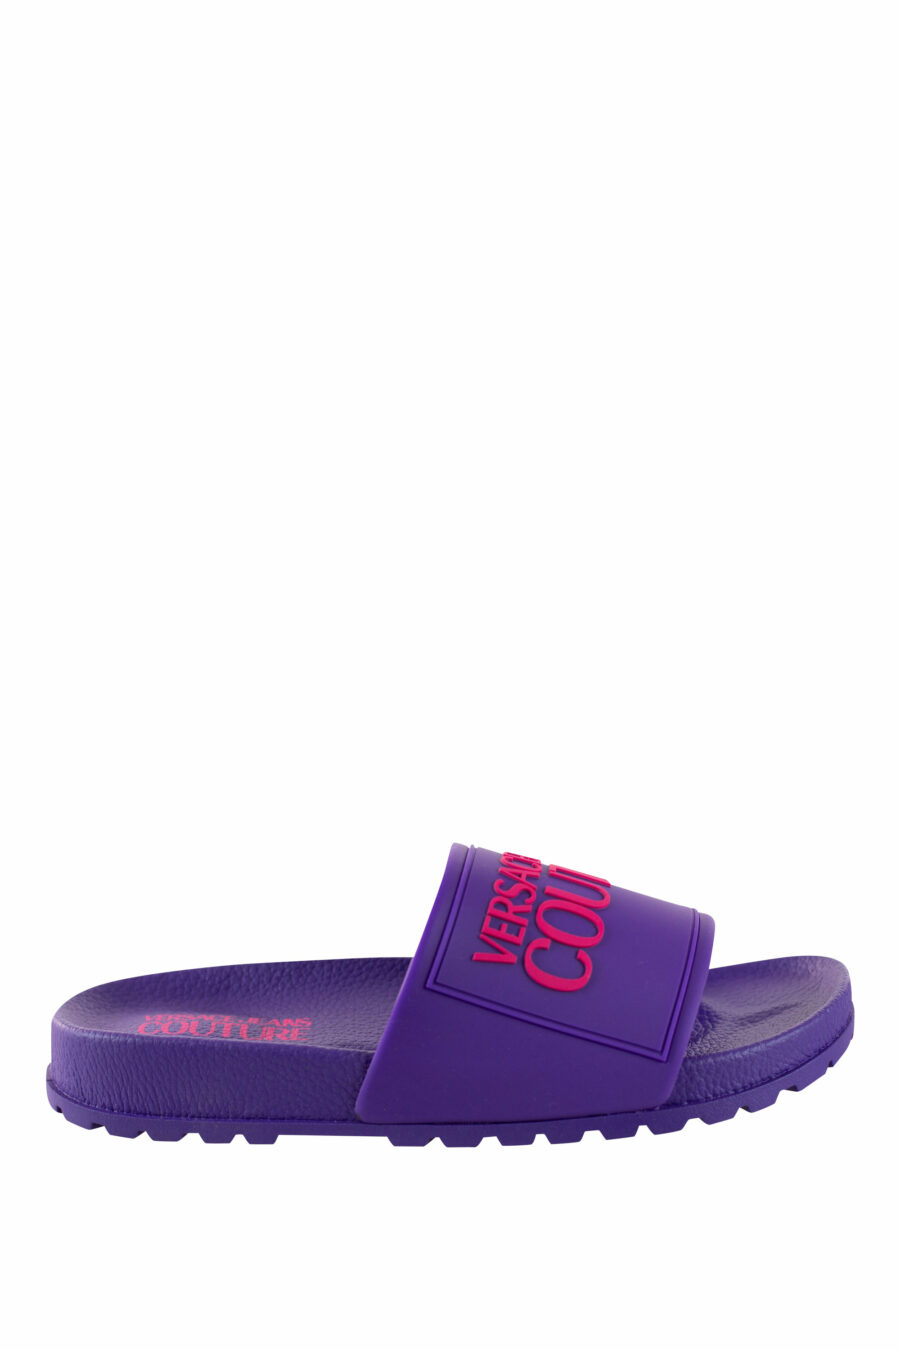 Chanclas violetas con logo y suela rugosa - IMG 4381